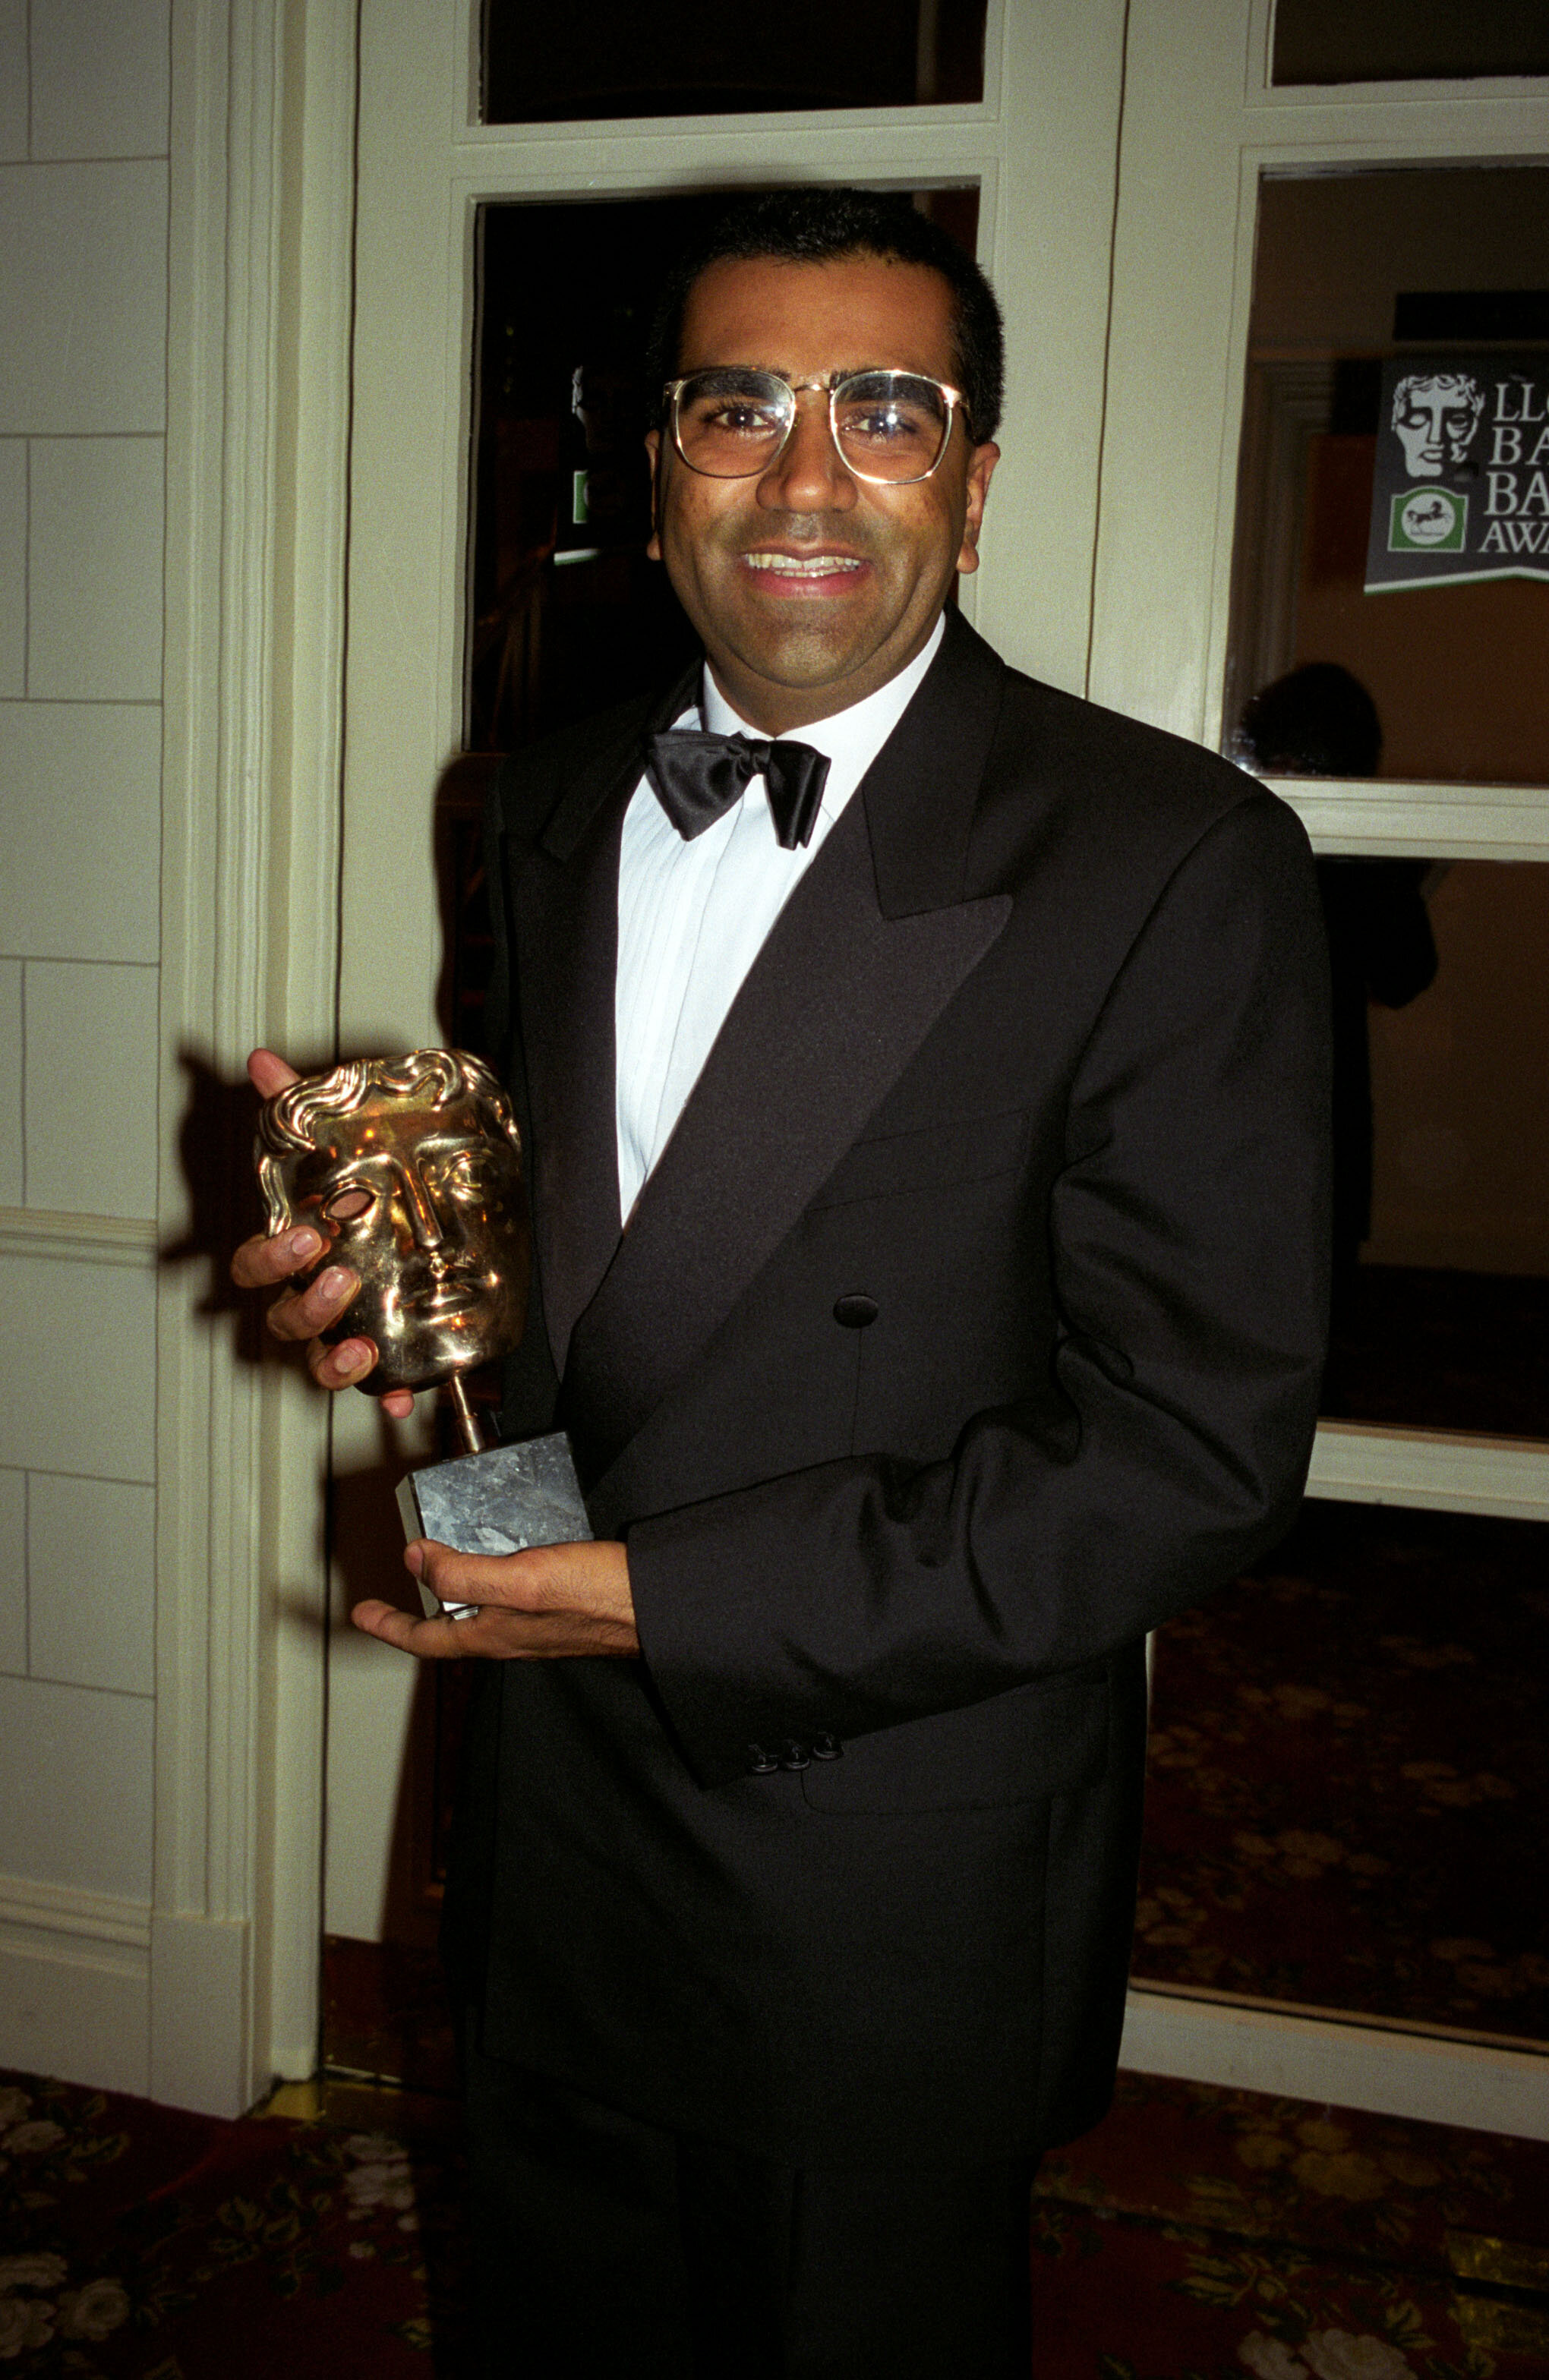 Why hasn't Kamal Hassan won an Oscar award yet? - Quora